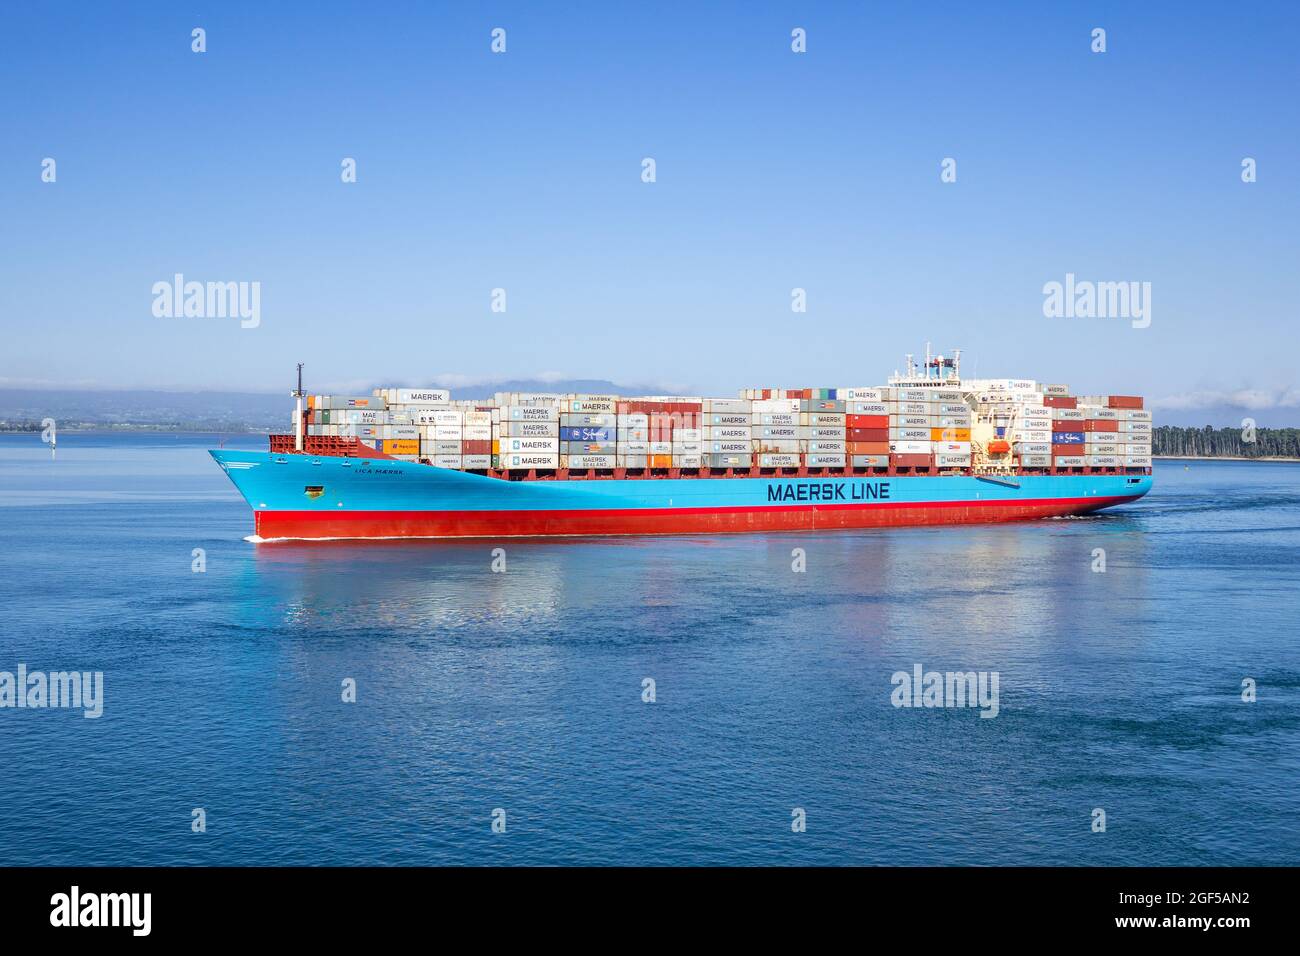 Lica Maersk Container Ship Maersk Shipping Lines Nouvelle-Zélande départ de Tauranga Nouvelle-Zélande avec des conteneurs maritimes Banque D'Images